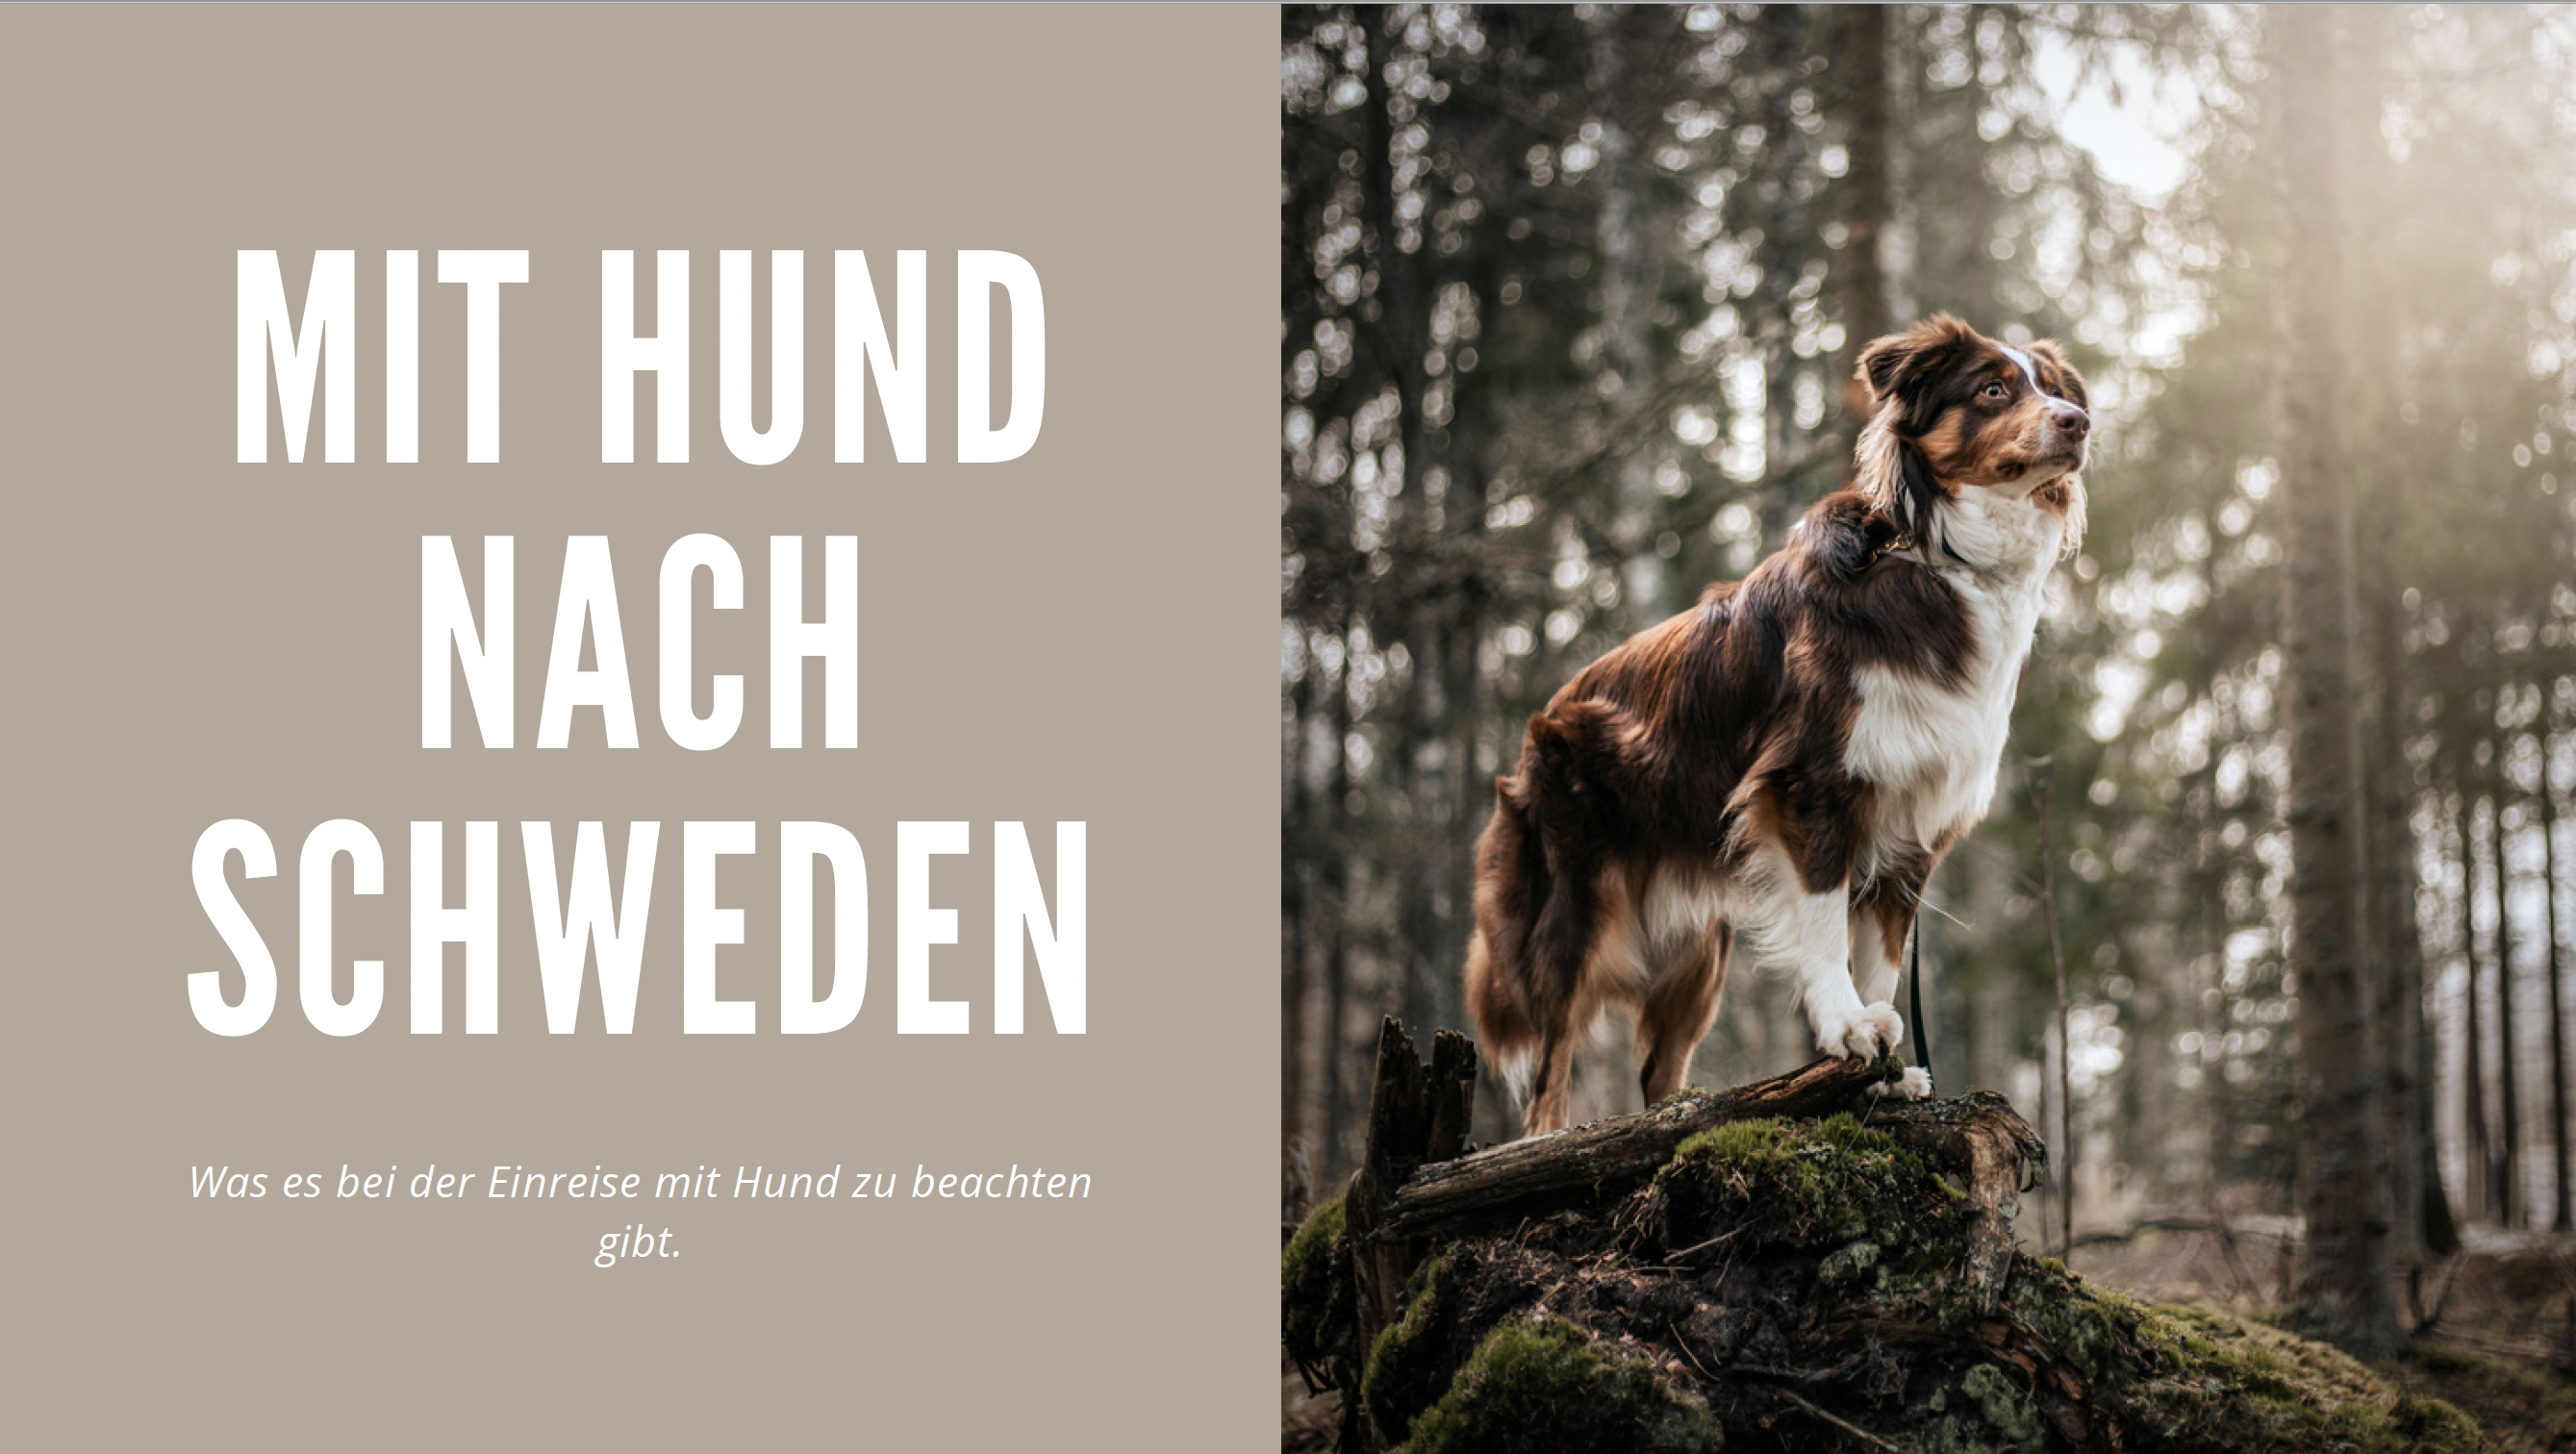 Travel Sweden: Die Einreise nach Schweden mit Hund